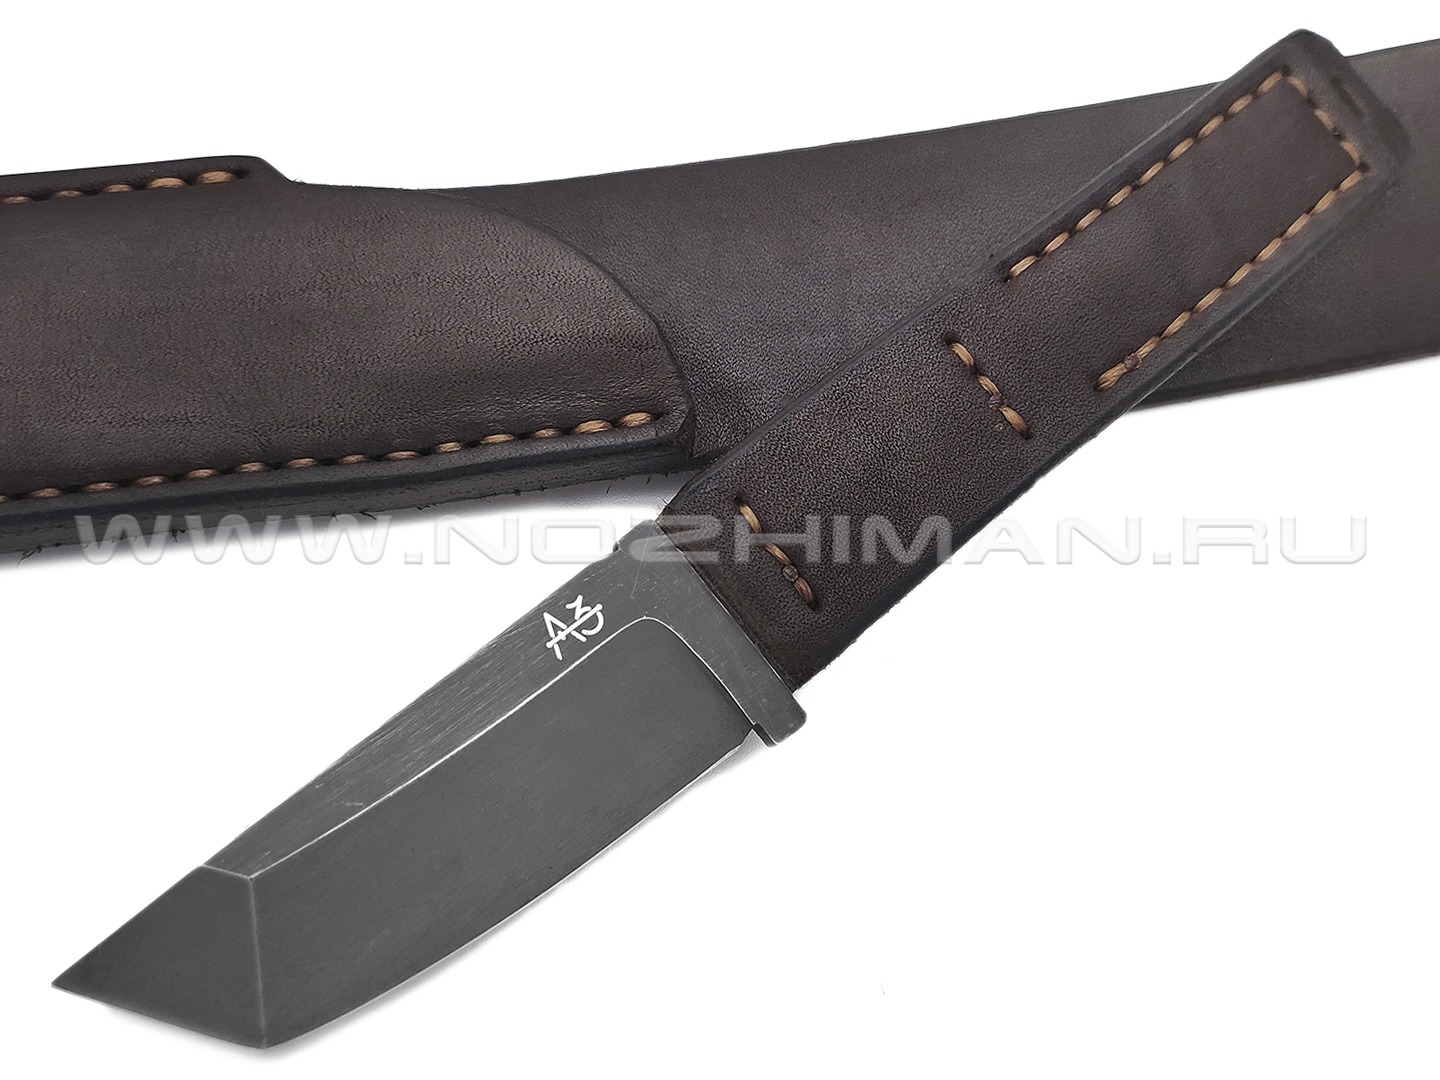 Ремень с ножом "Танто" натуральная кожа, сталь 440C